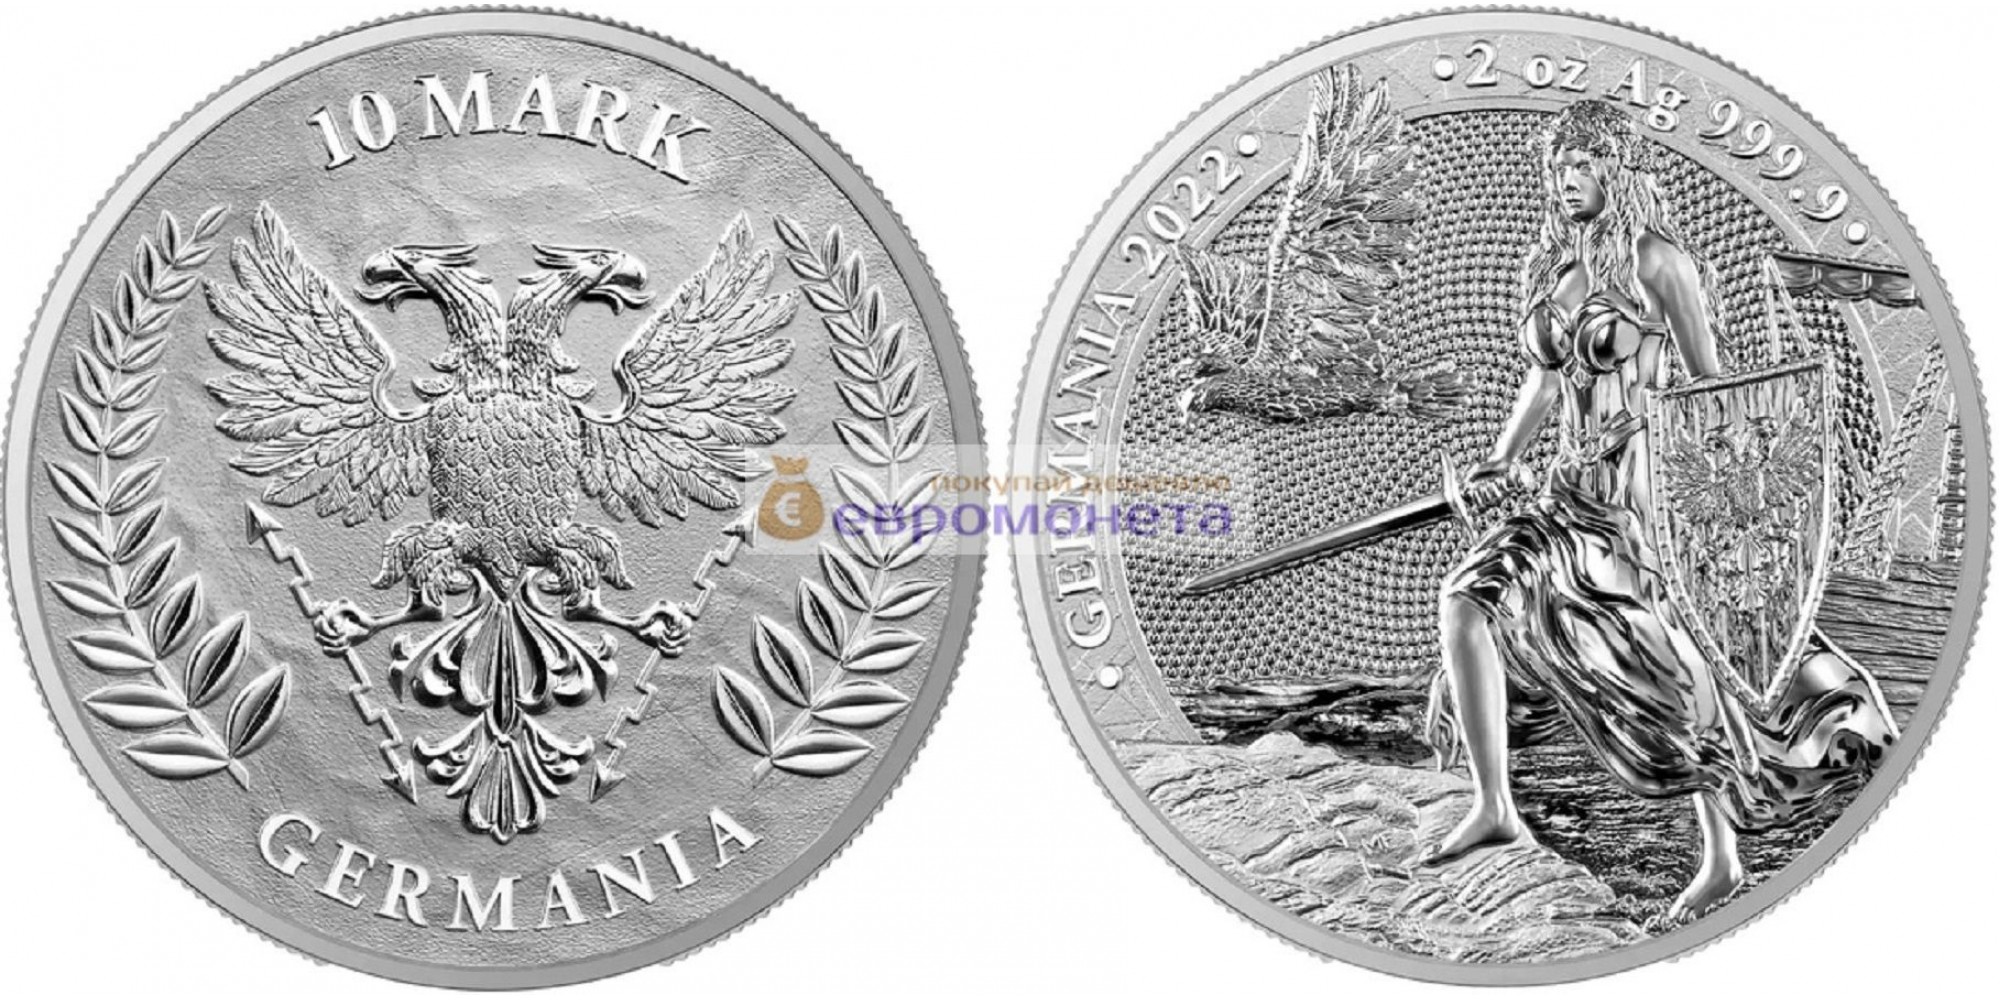 Германия 10 марок 2022 год 2 унции серебра 9999 пробы. Germania Mint тираж 2 500 шт.